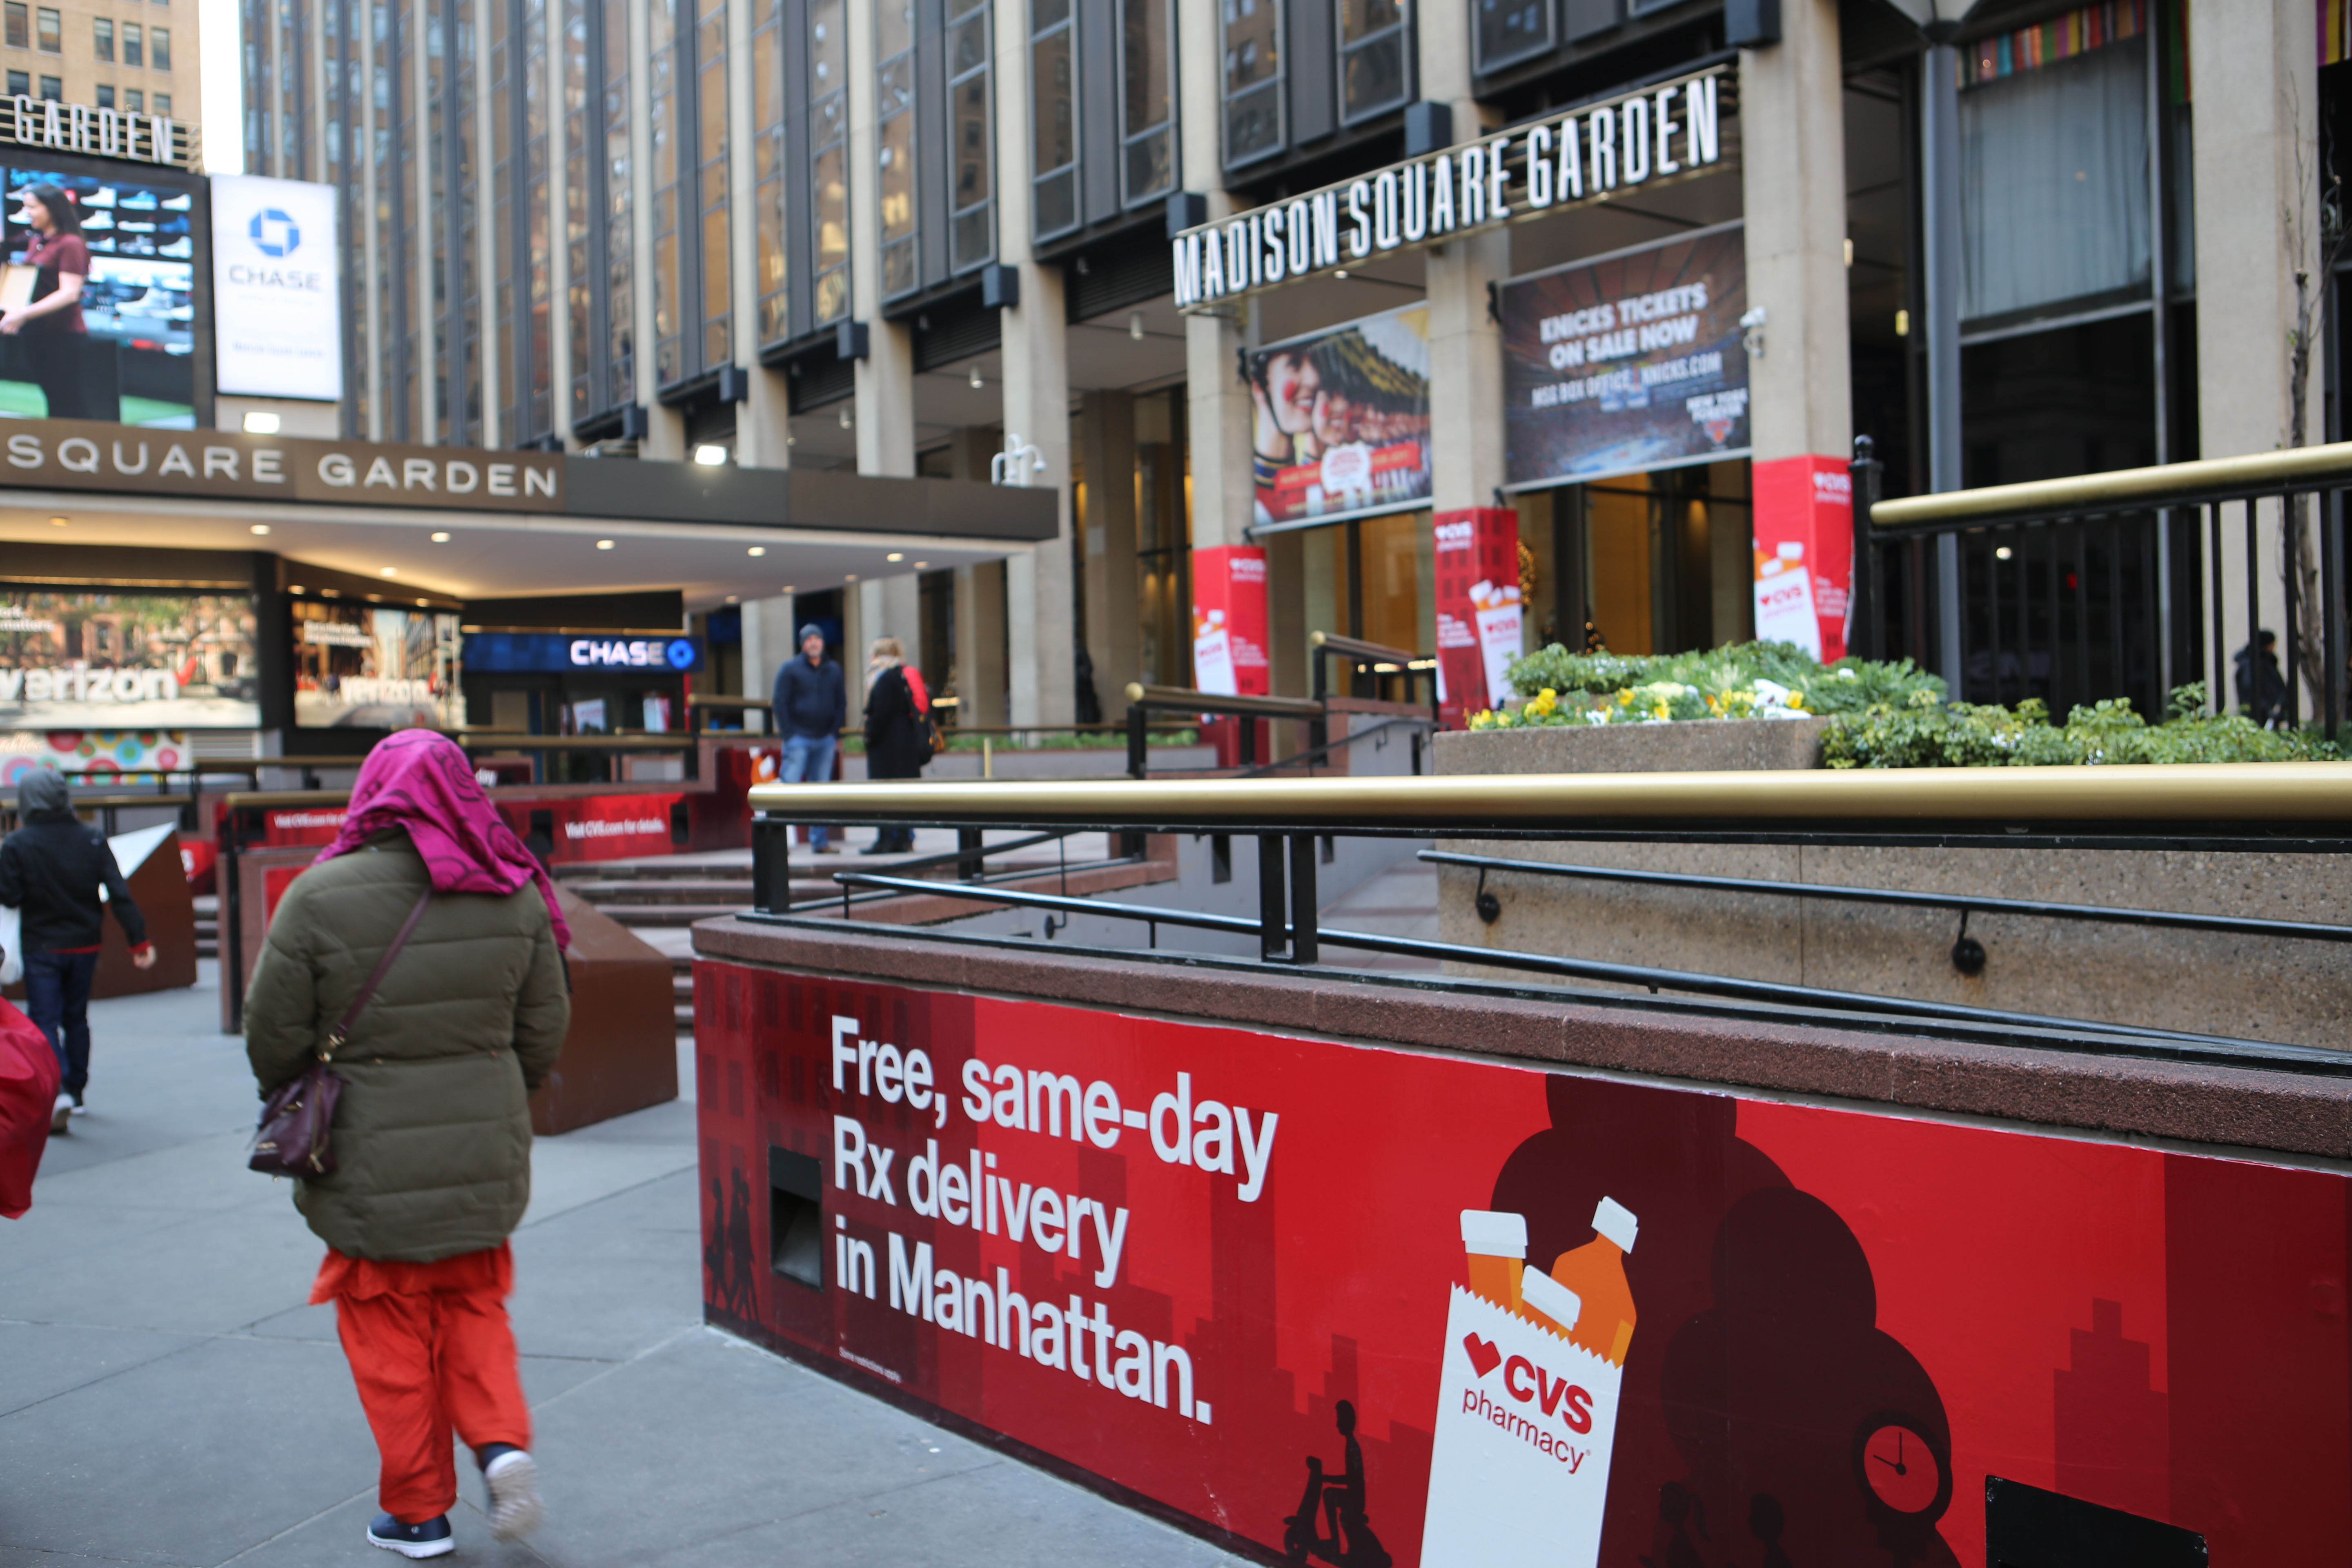 Free, same-day prescription delivery in Manhattan.